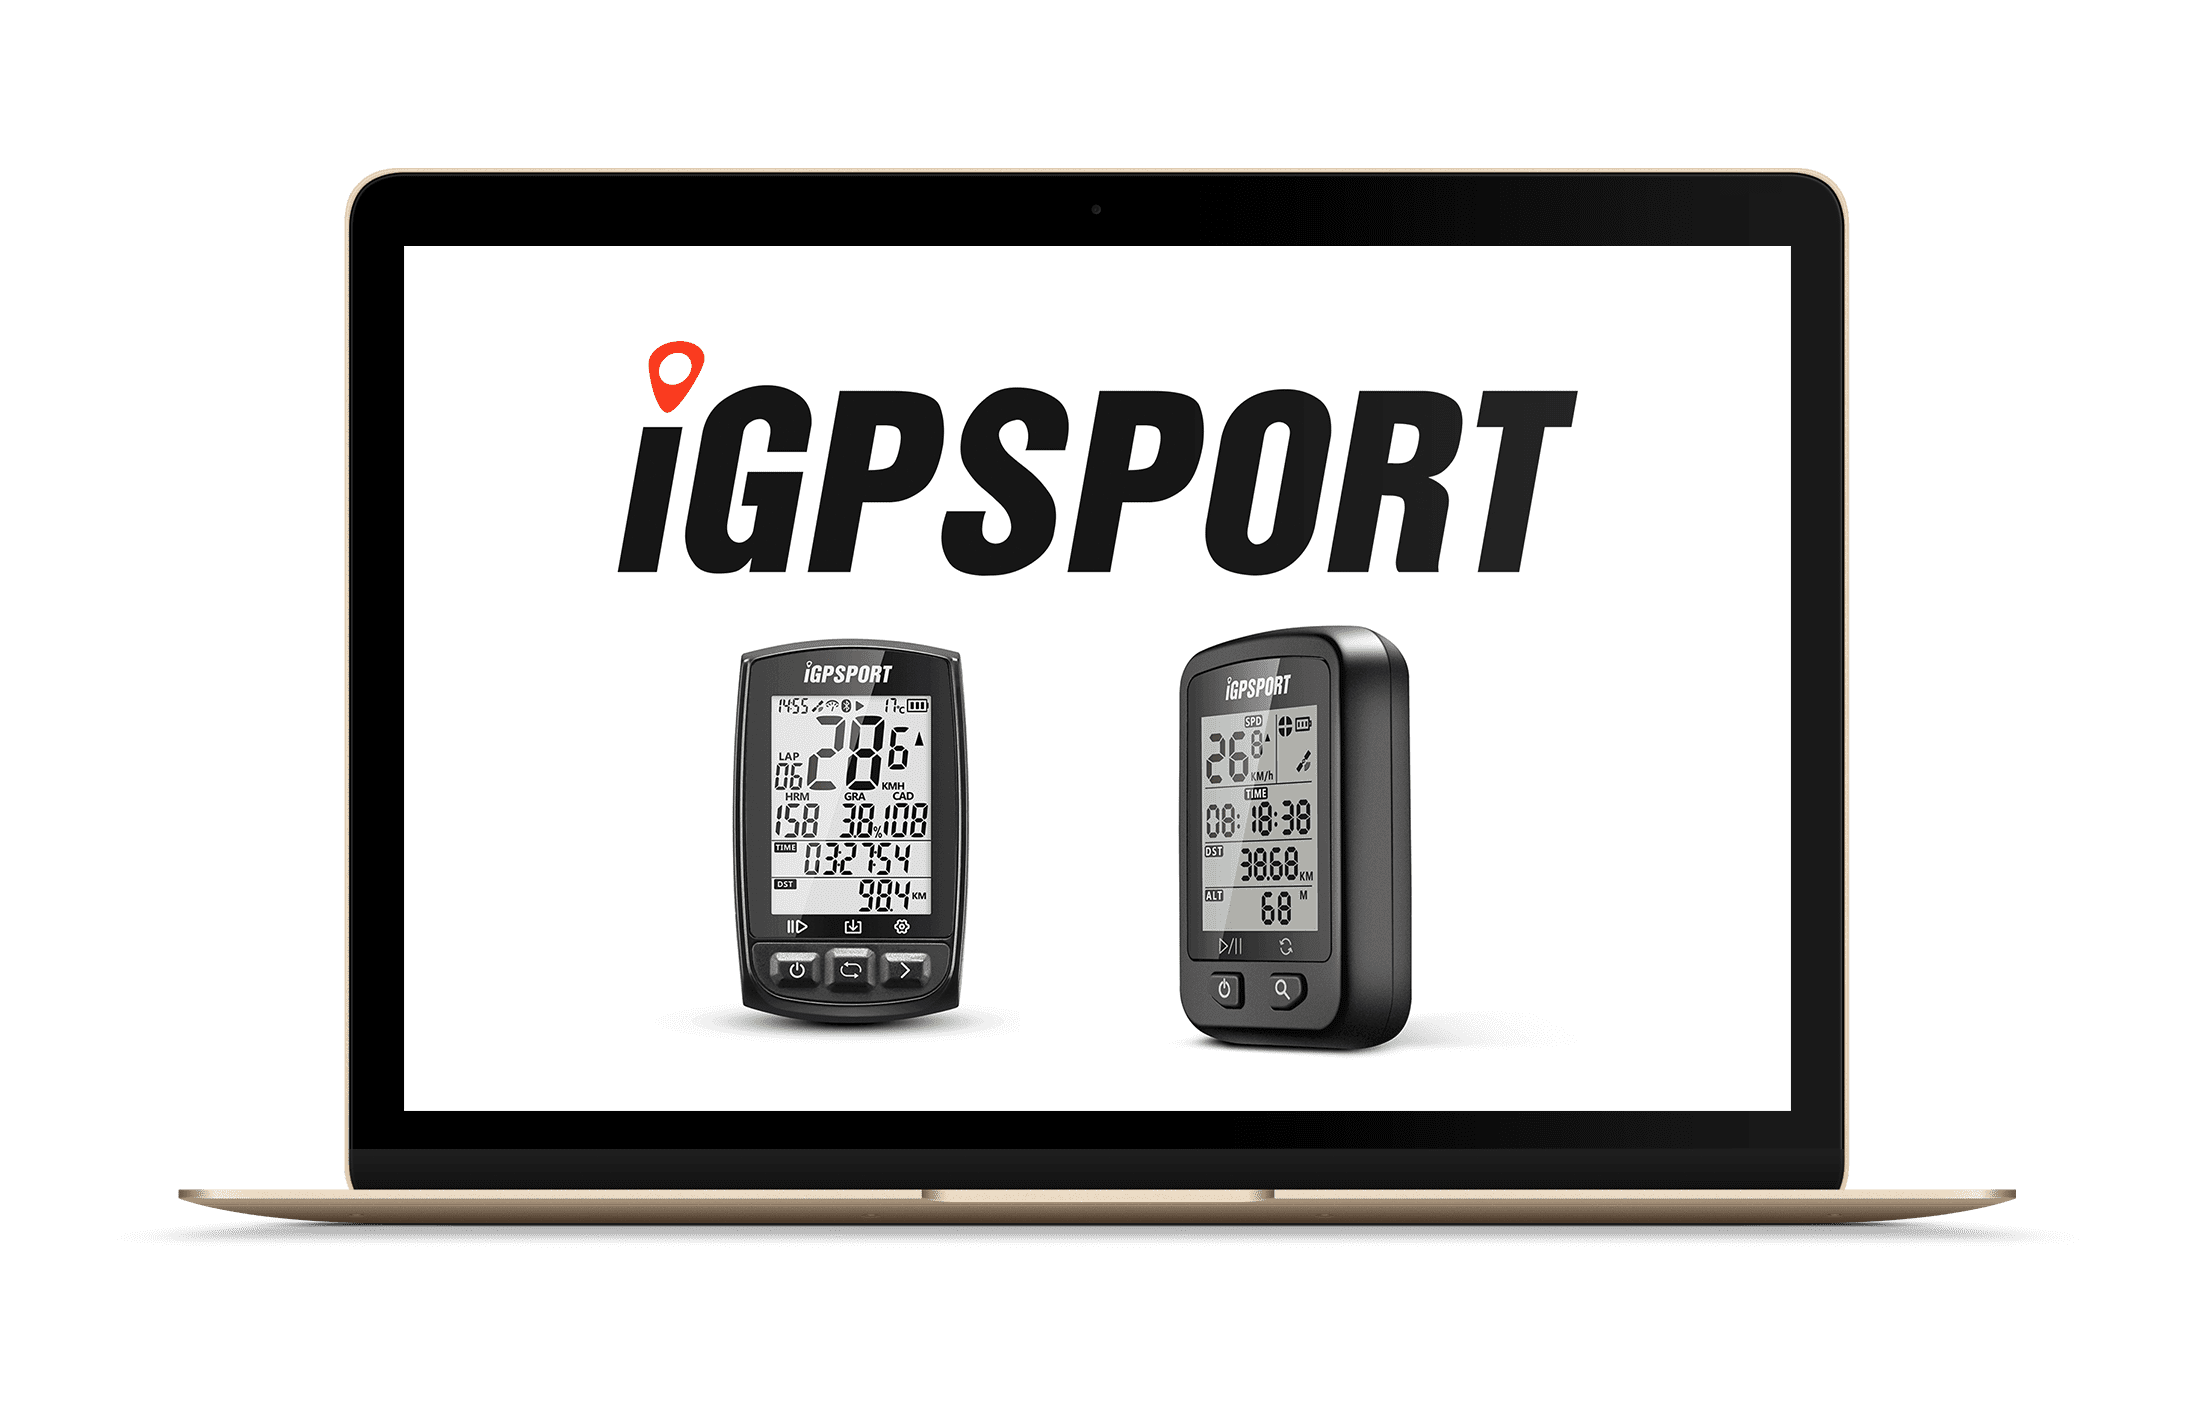 iGPSPORT – nowa marka liczników rowerowych dostępna w Stajni Rowerowej